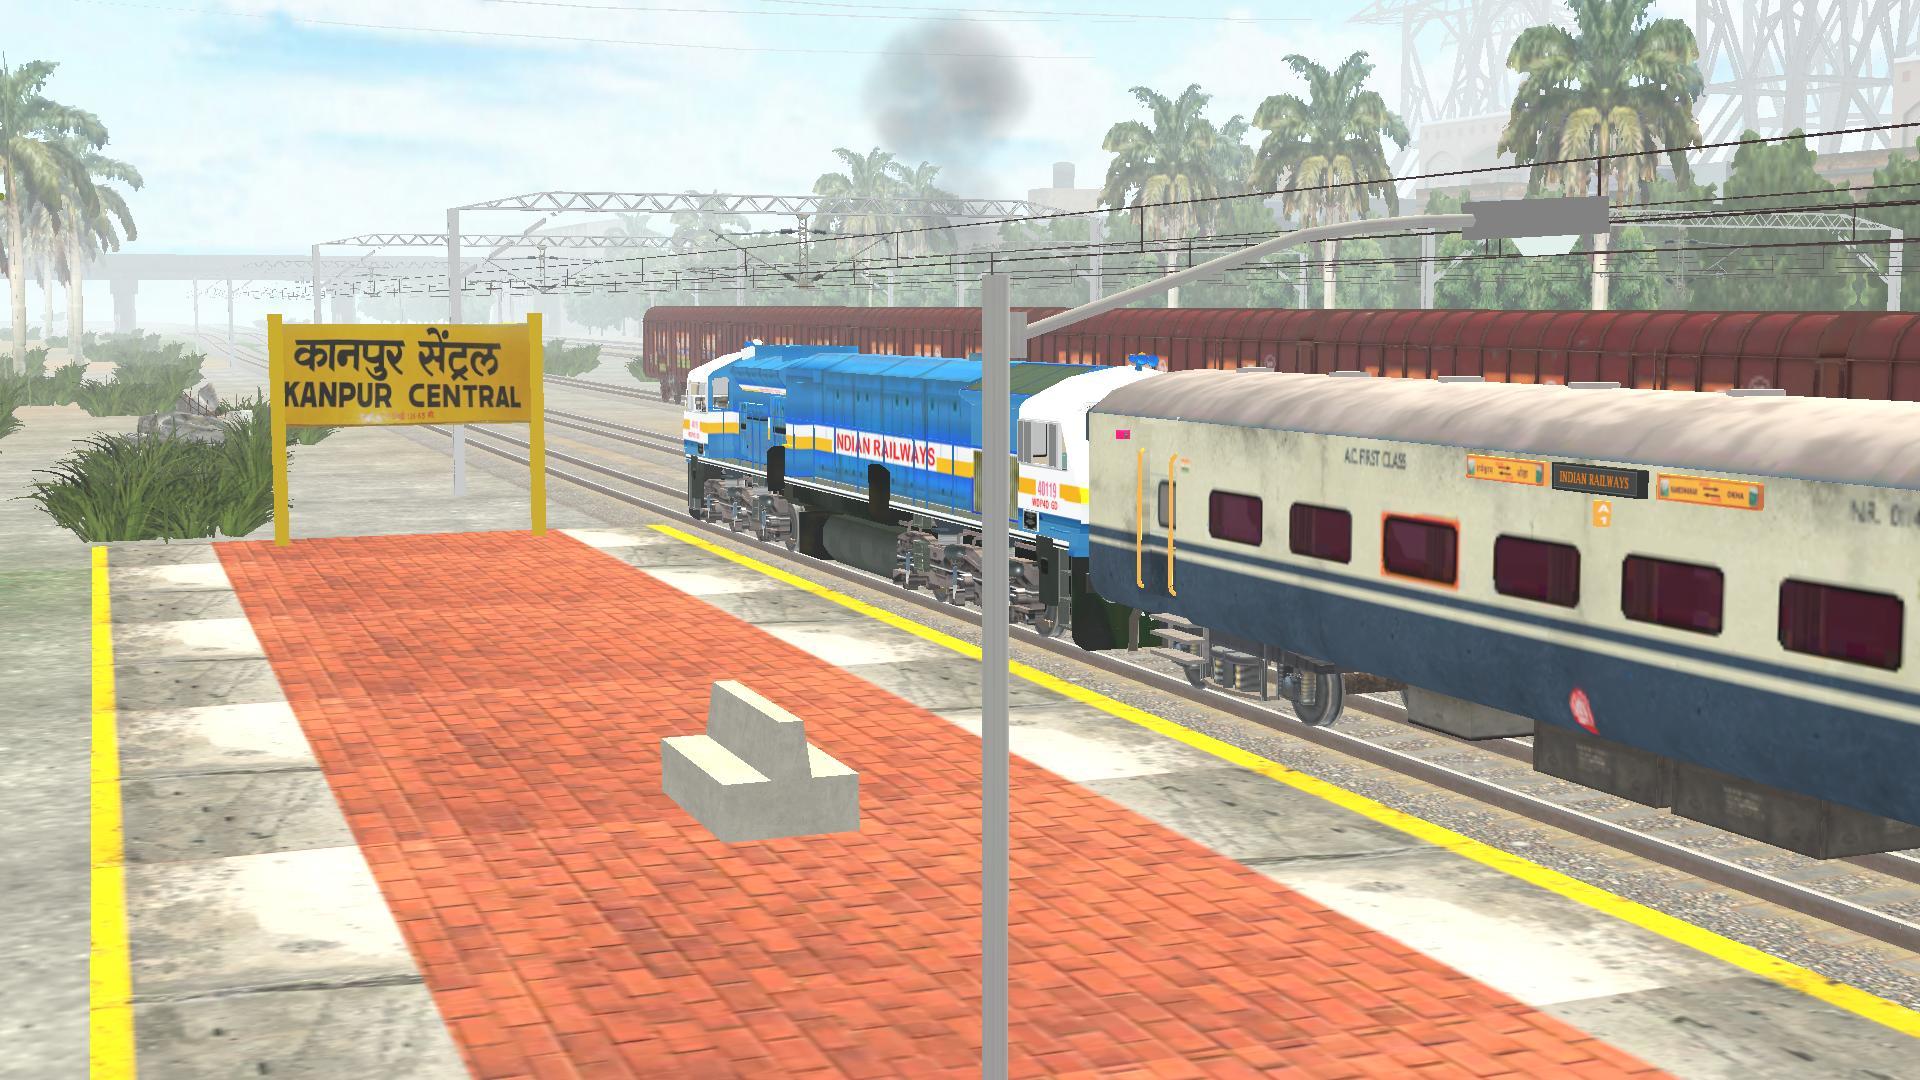 Screenshot of Indian Train SimulatorUltimate